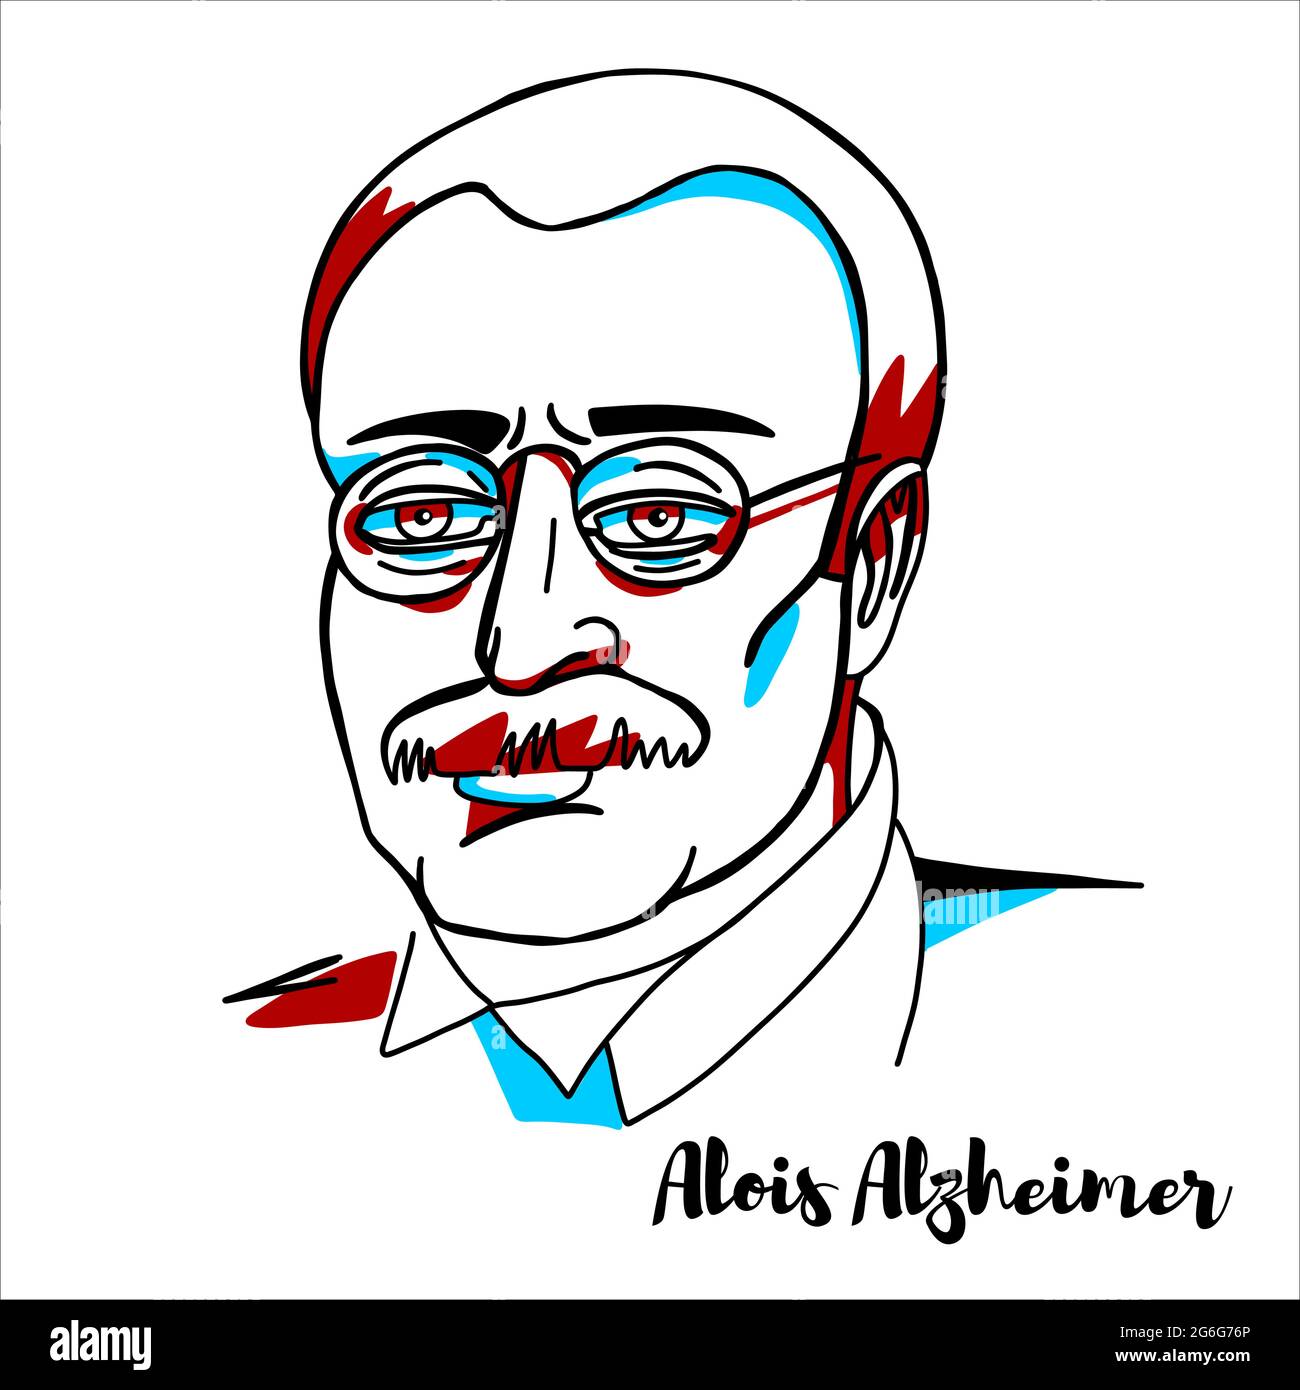 RUSSIE, MOSCOU - 16 avril 2019 : portrait vectoriel gravé d'Alois Alzheimer avec contours d'encre. Psychiatre et neuropathologiste allemand, le premier publ Illustration de Vecteur